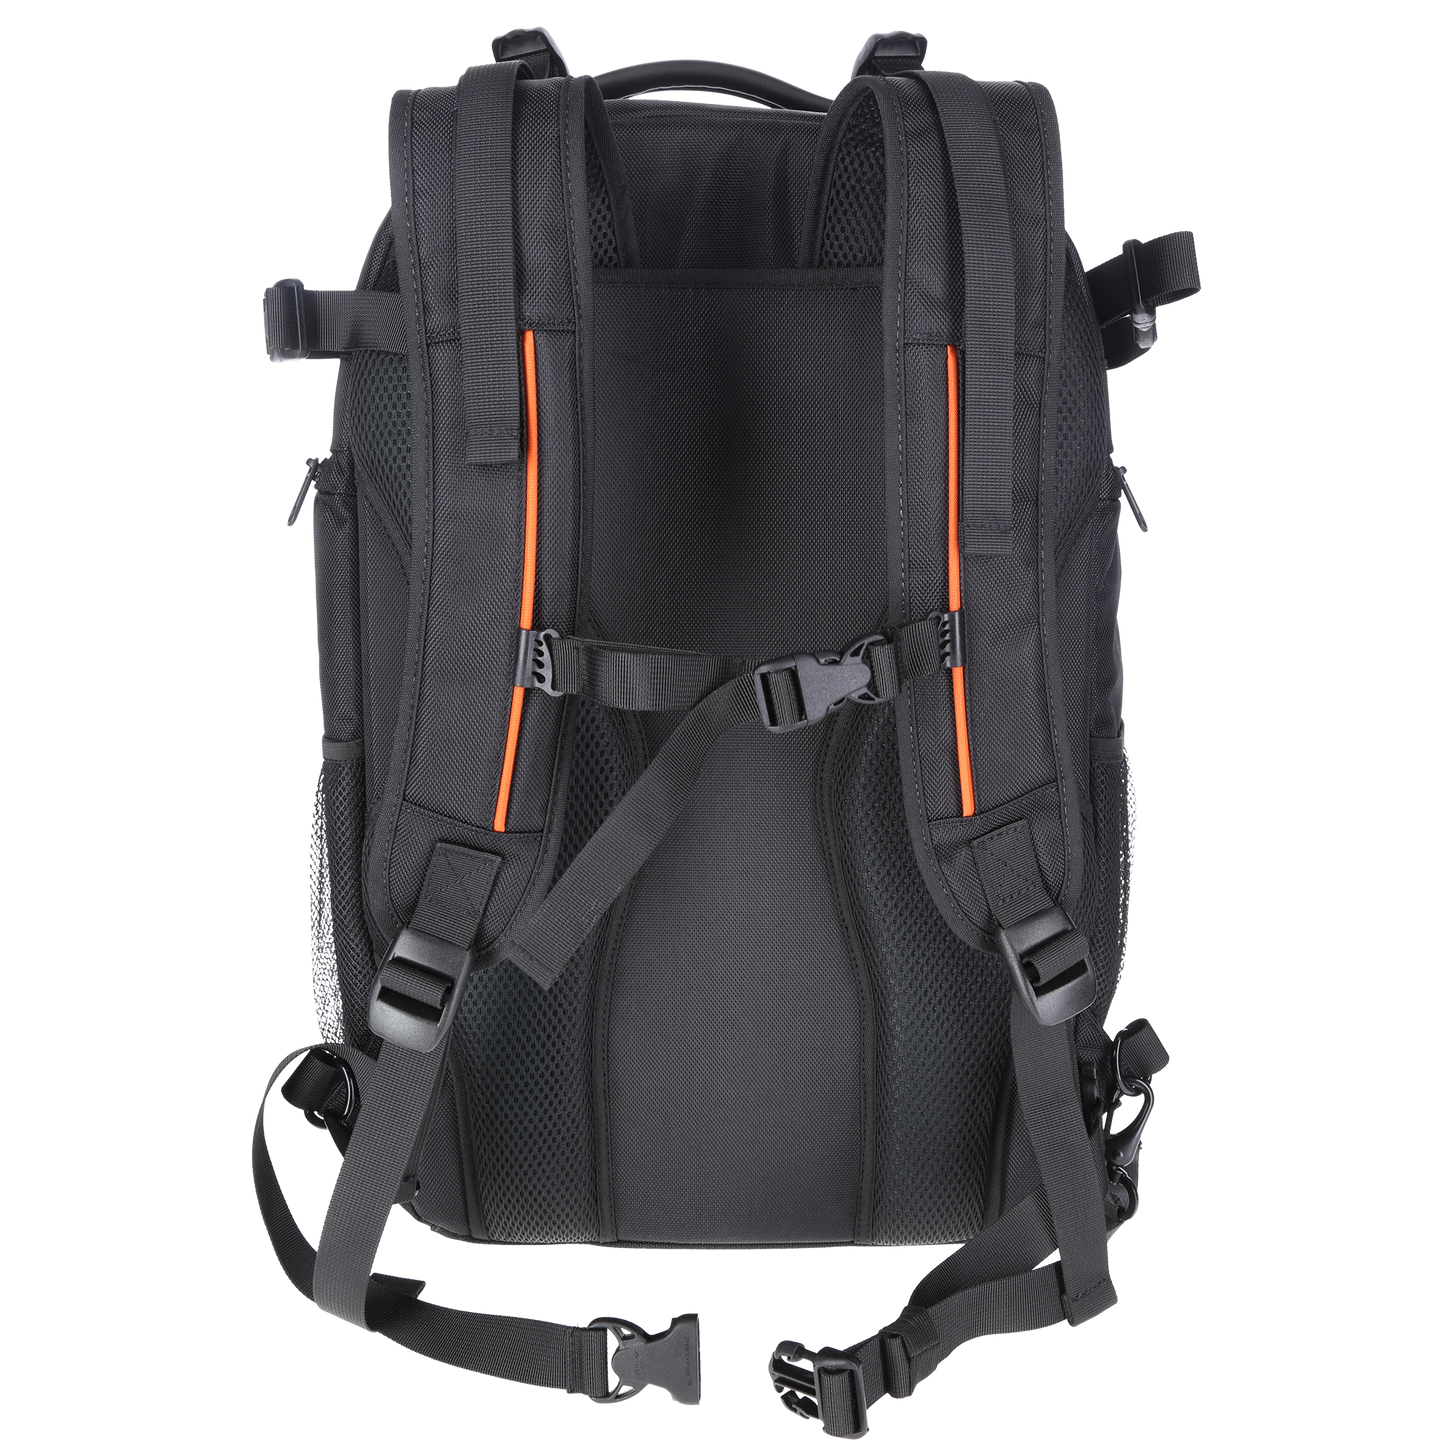 Studio flash backpack